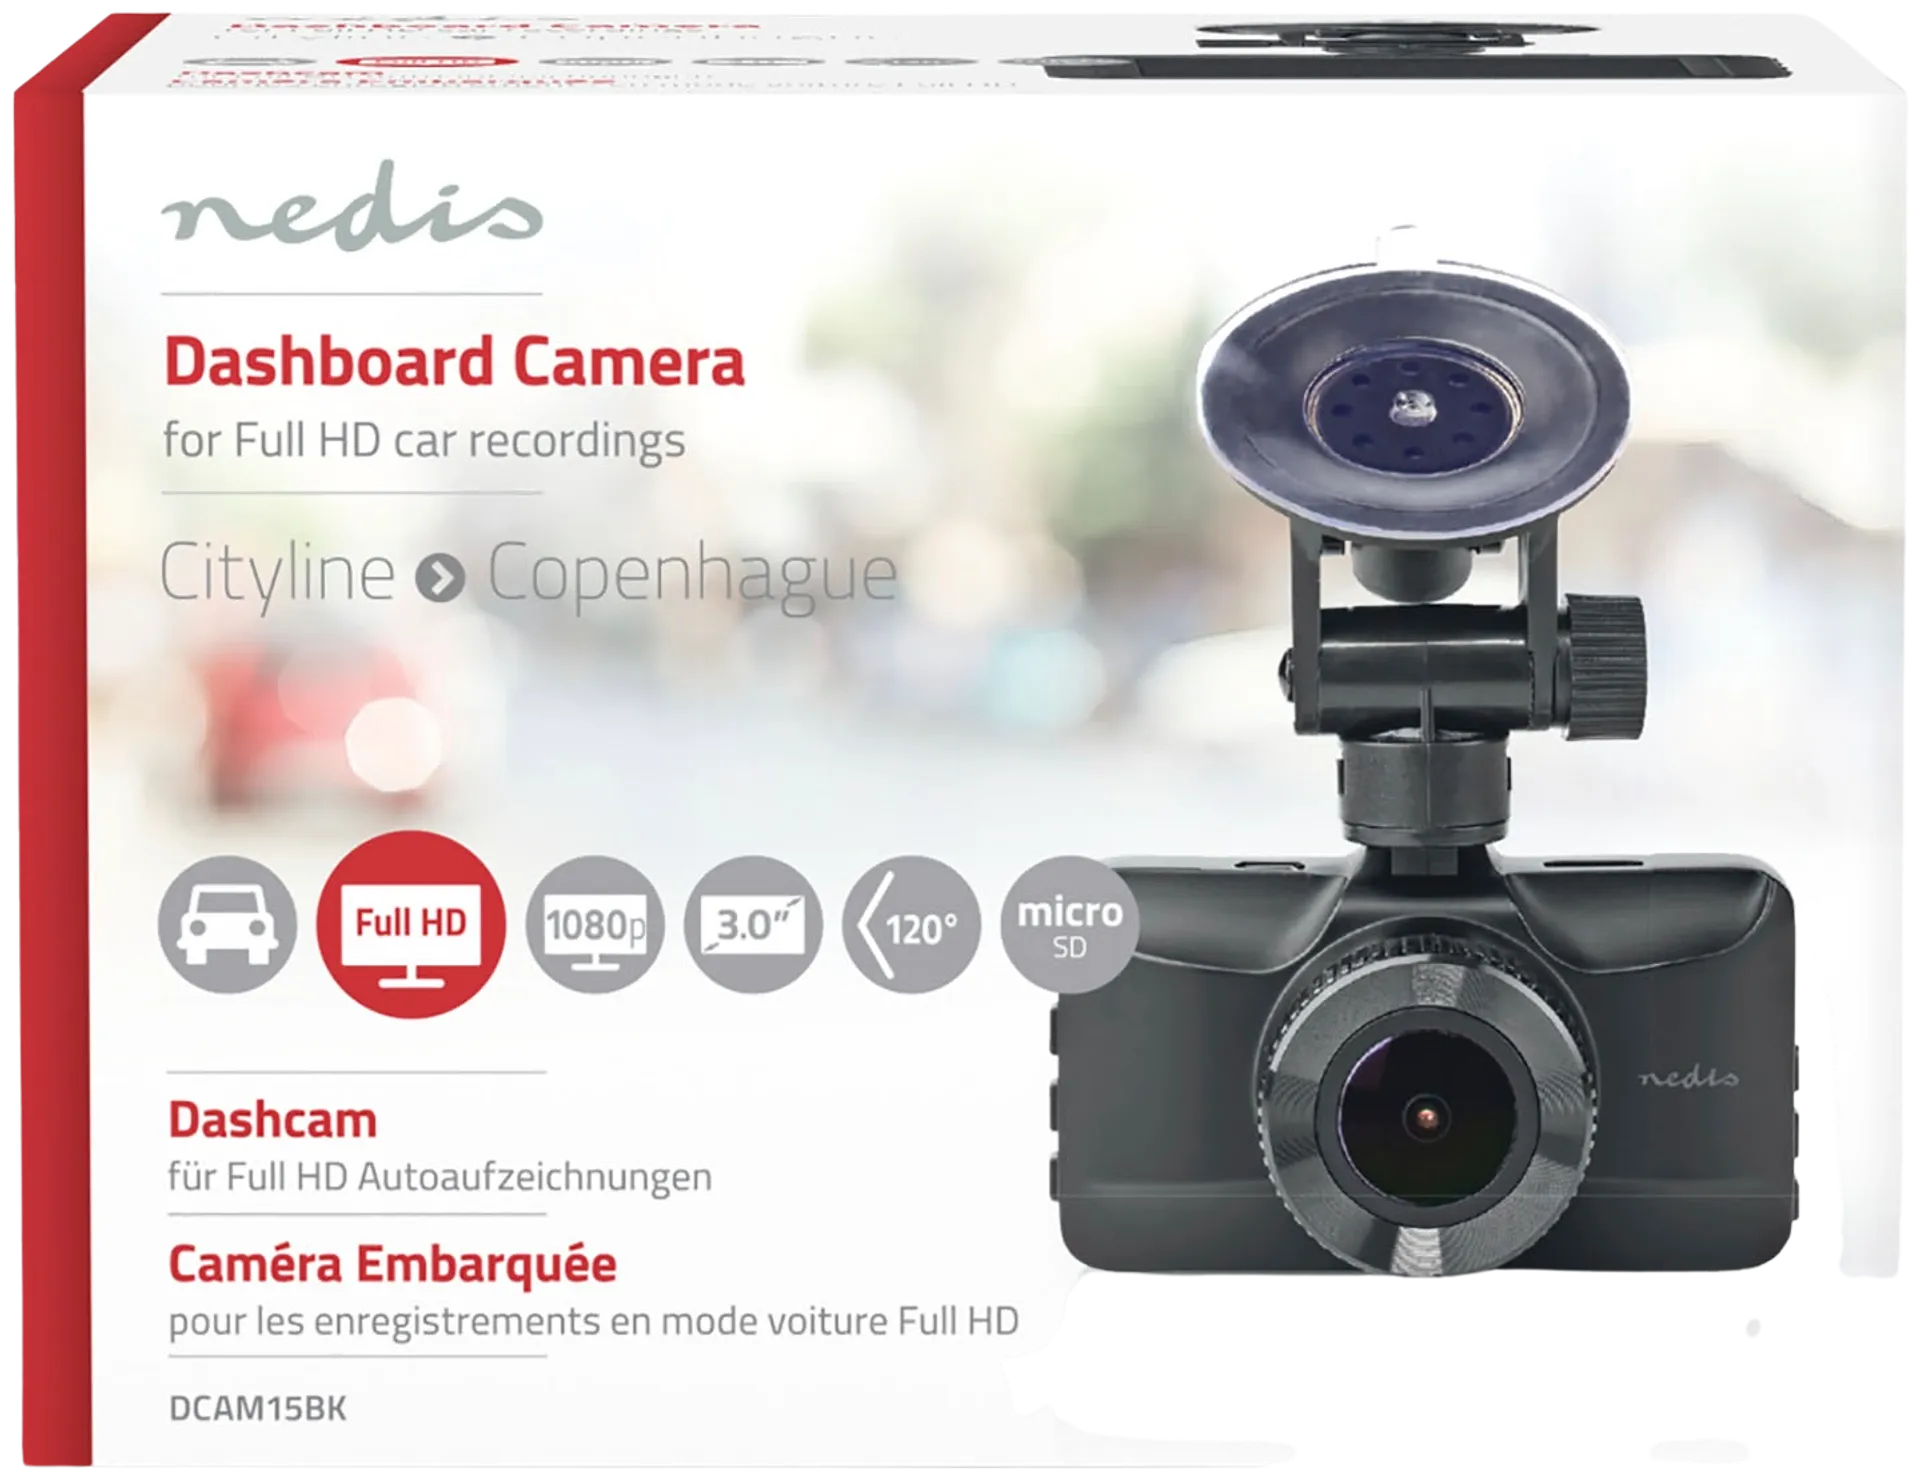 Nedis Autokamera DCAM15BK 1080p@30fps 12.0 MPixel 3.0 " LCD Musta/Punainen - 12